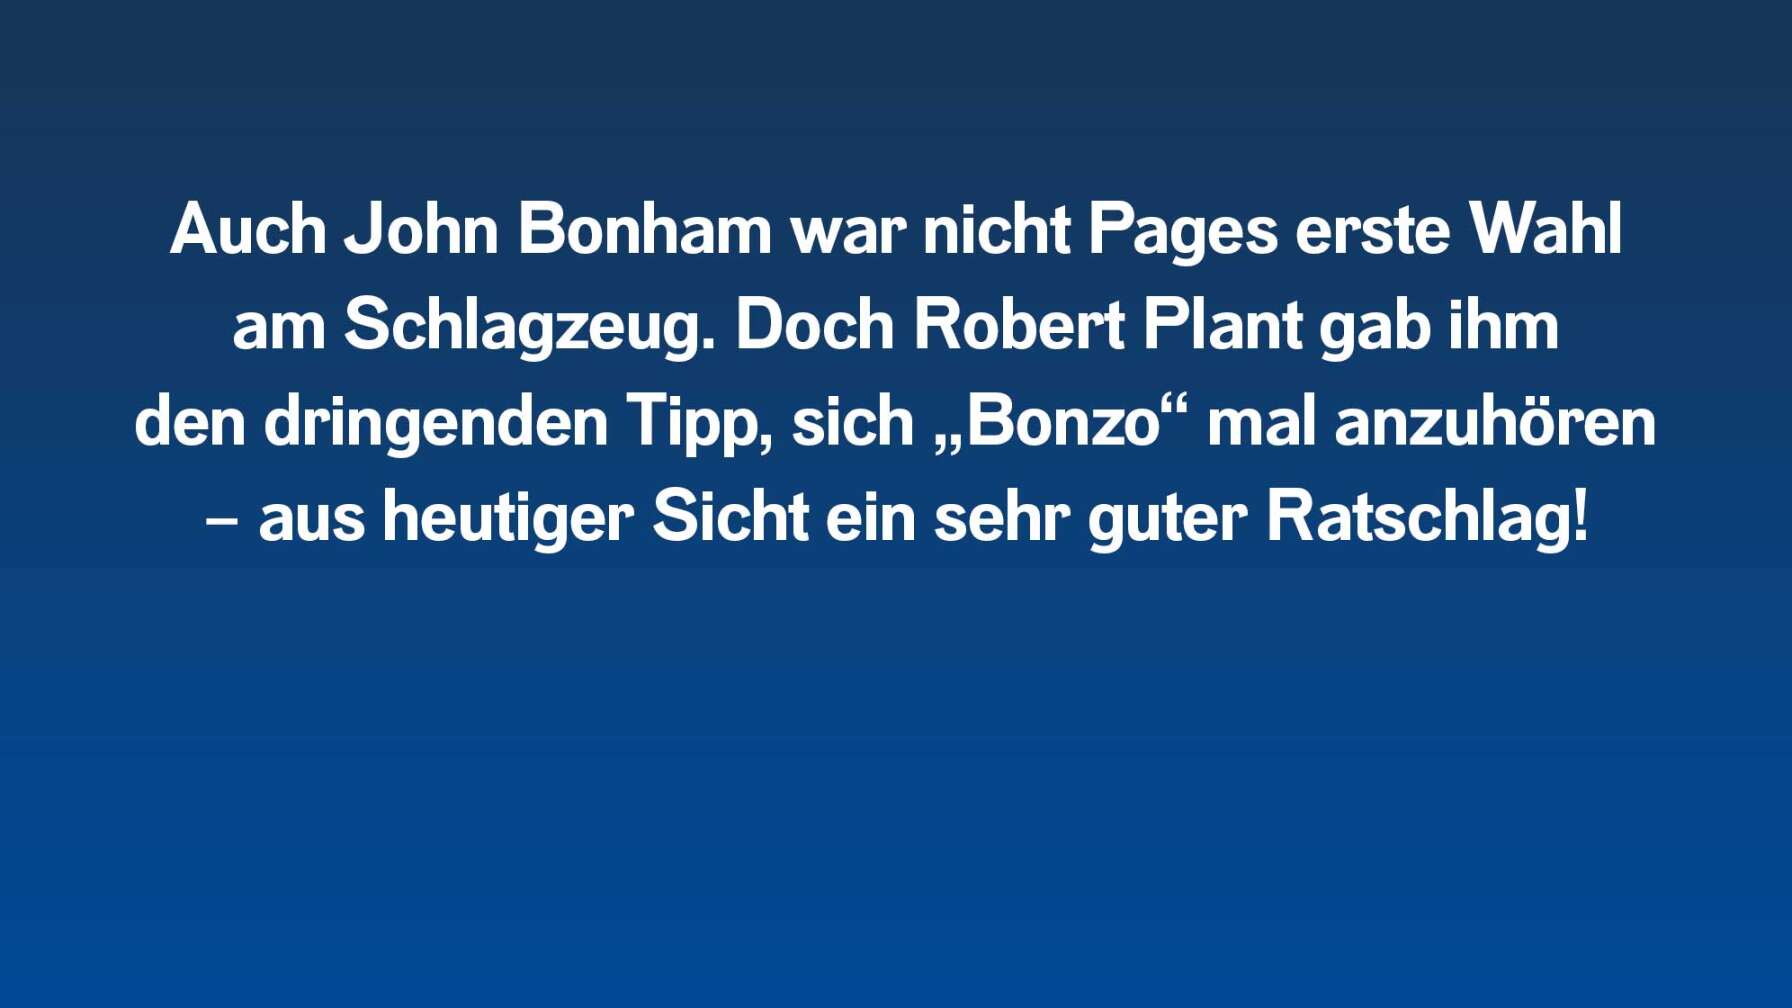 Auch John Bonham war nicht Pages erste Wahl am Schlagzeug. Doch Robert Plant gab ihm den dringenden Tipp, sich „Bonzo“ mal anzuhören – aus heutiger Sicht ein sehr guter Ratschlag!